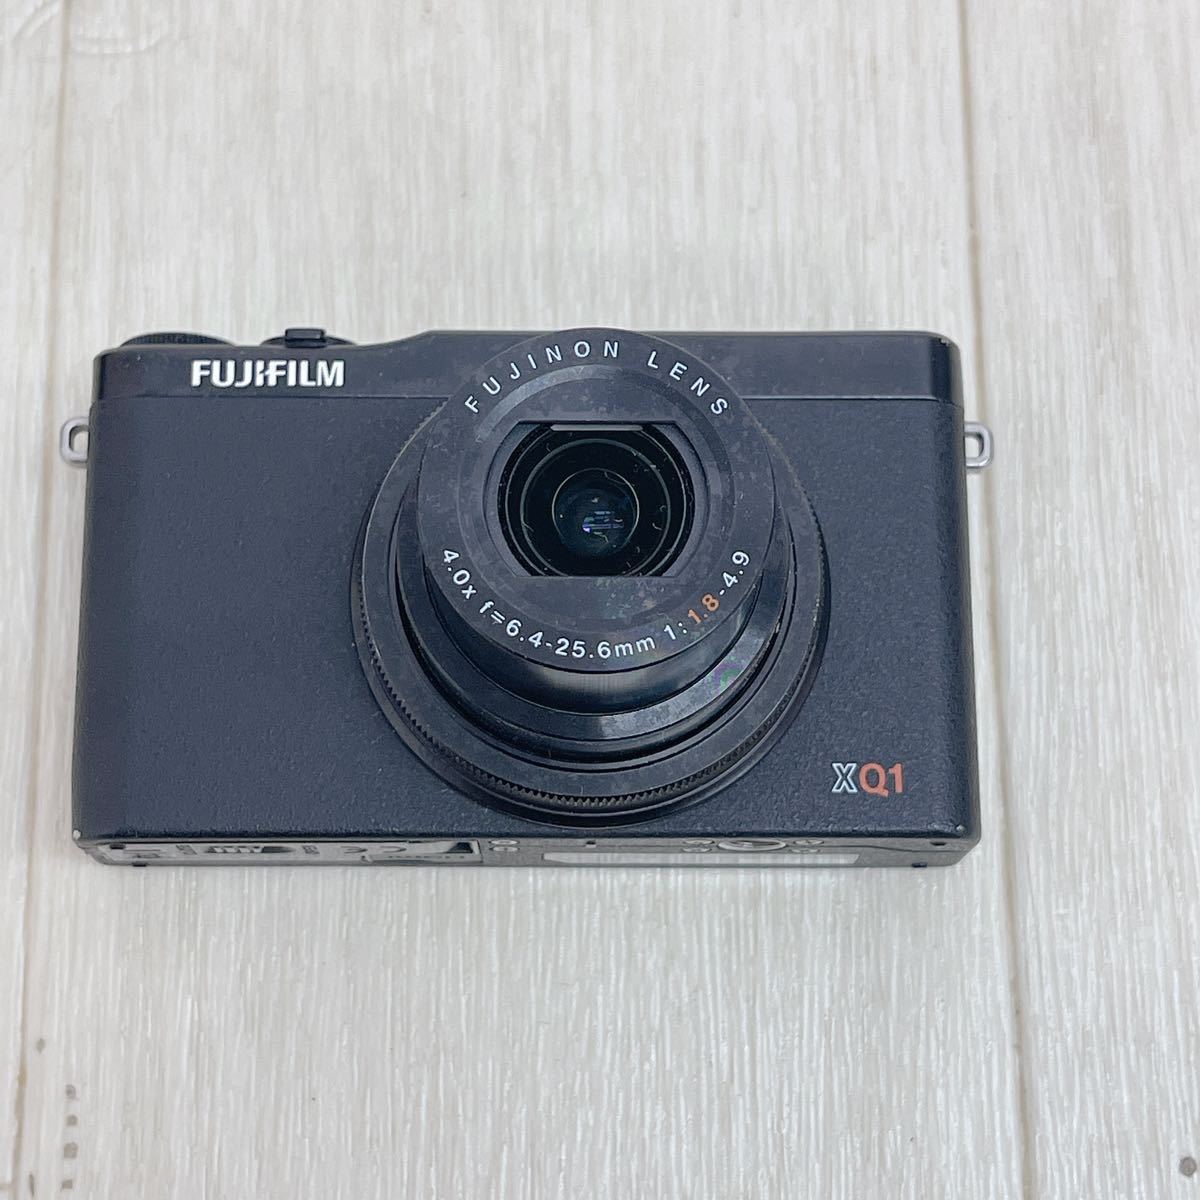 FUJIFILM デジタルカメラ XQ1 ブラック F FX-XQ1 B 新しい到着 feeds